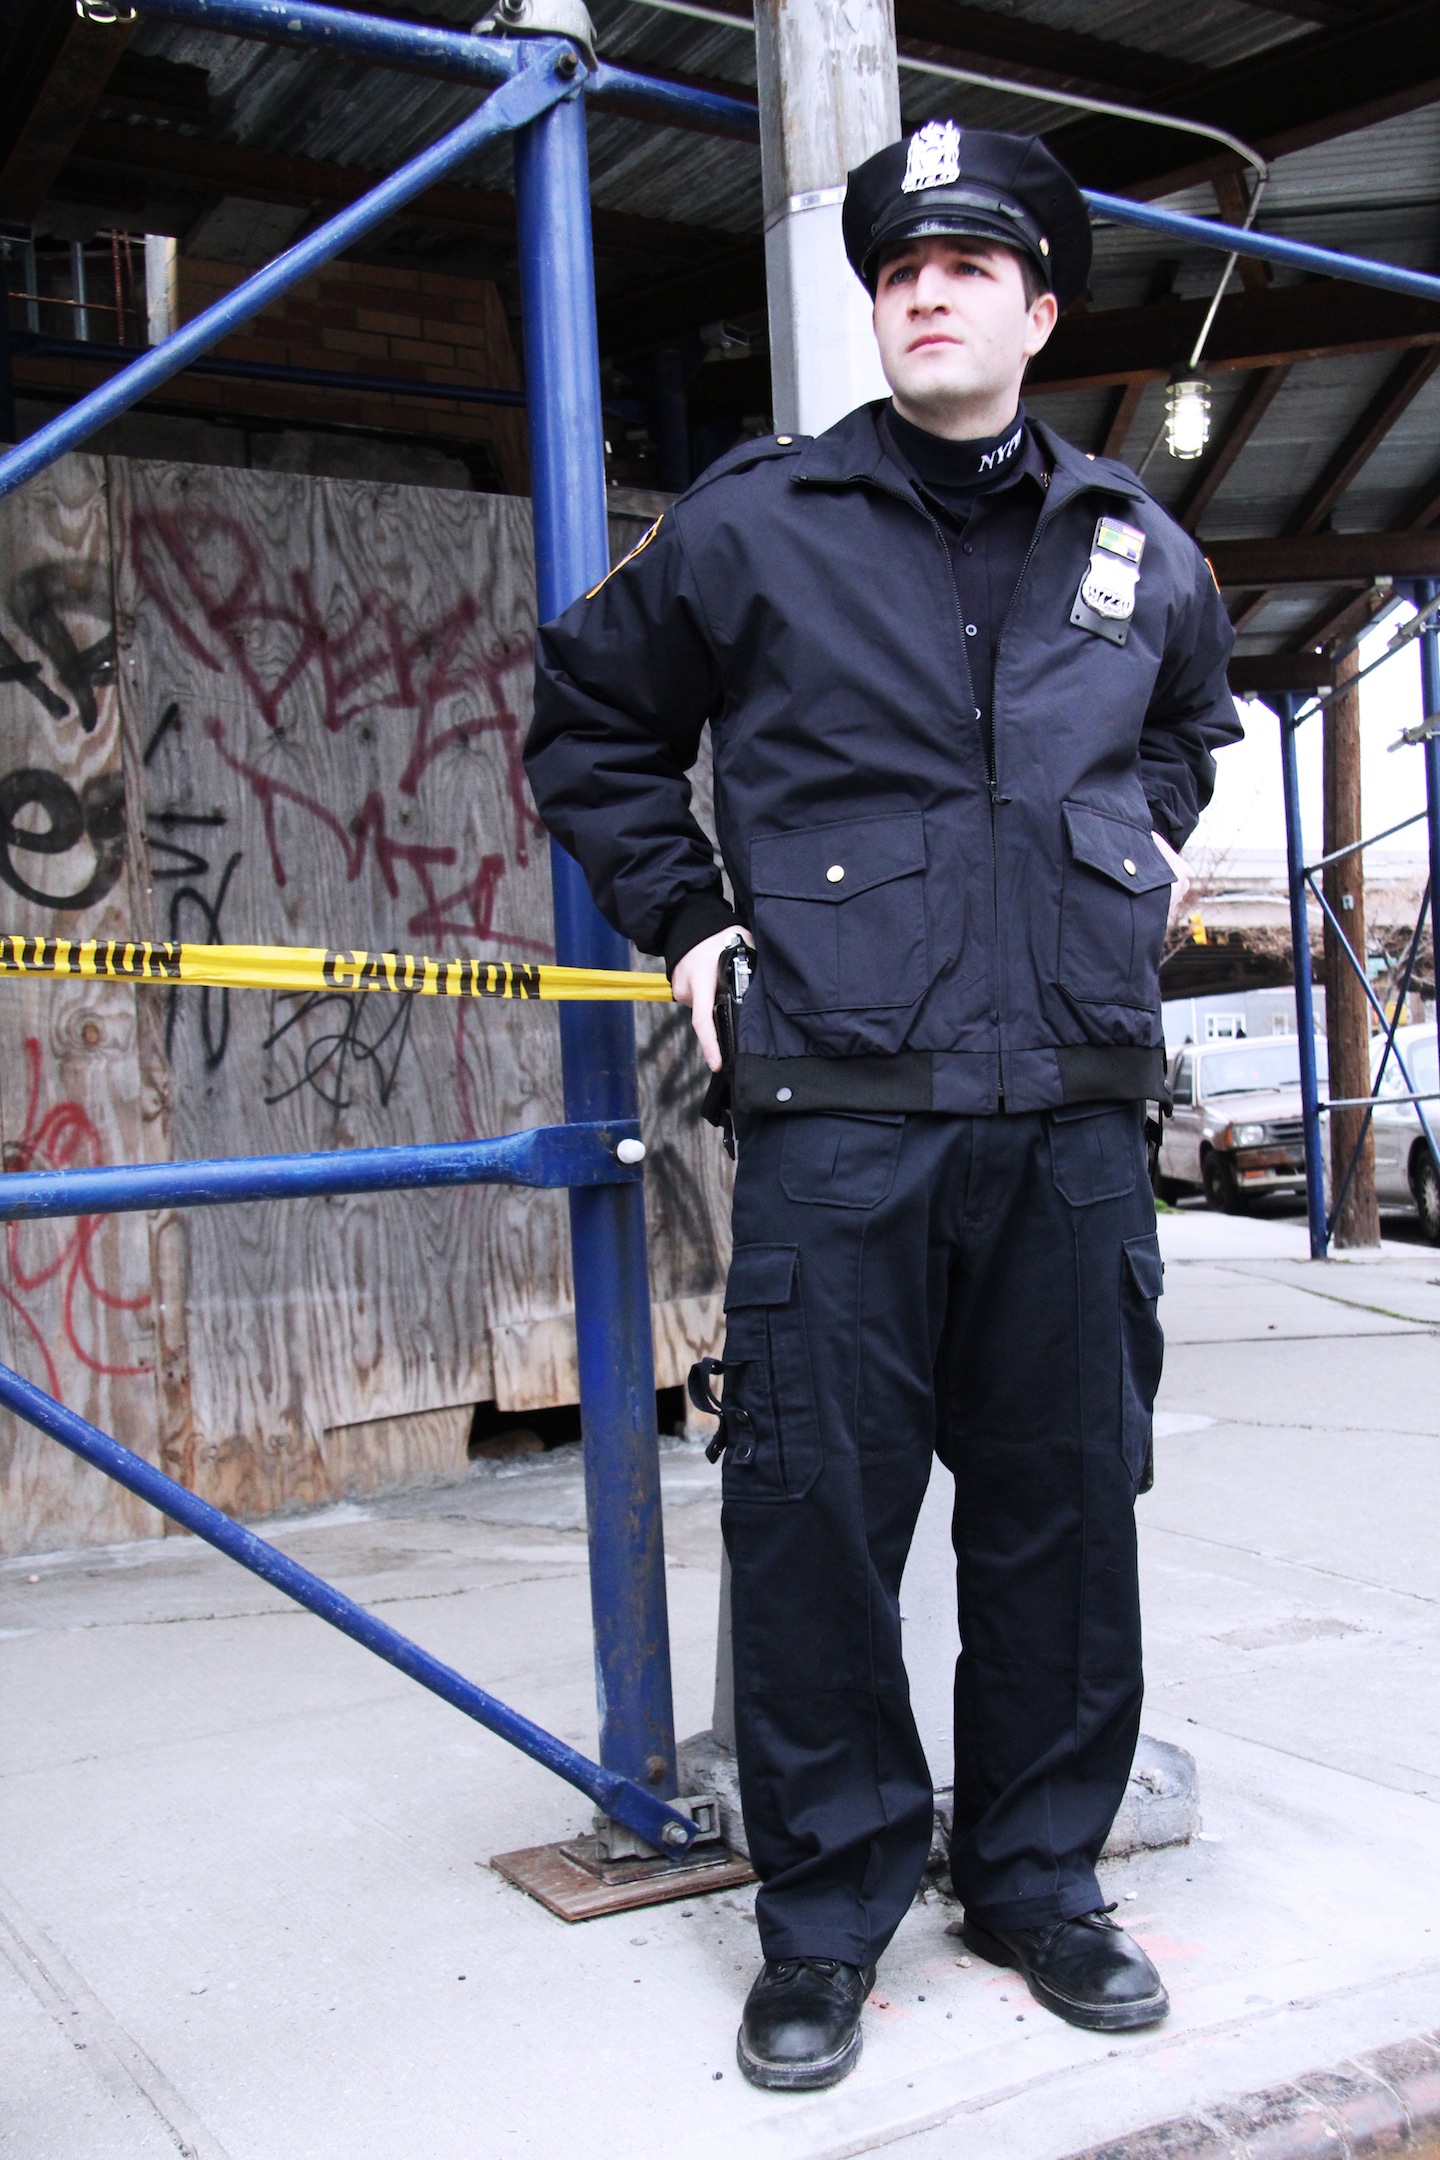 Rocco Chierichella in NYPD uniform.